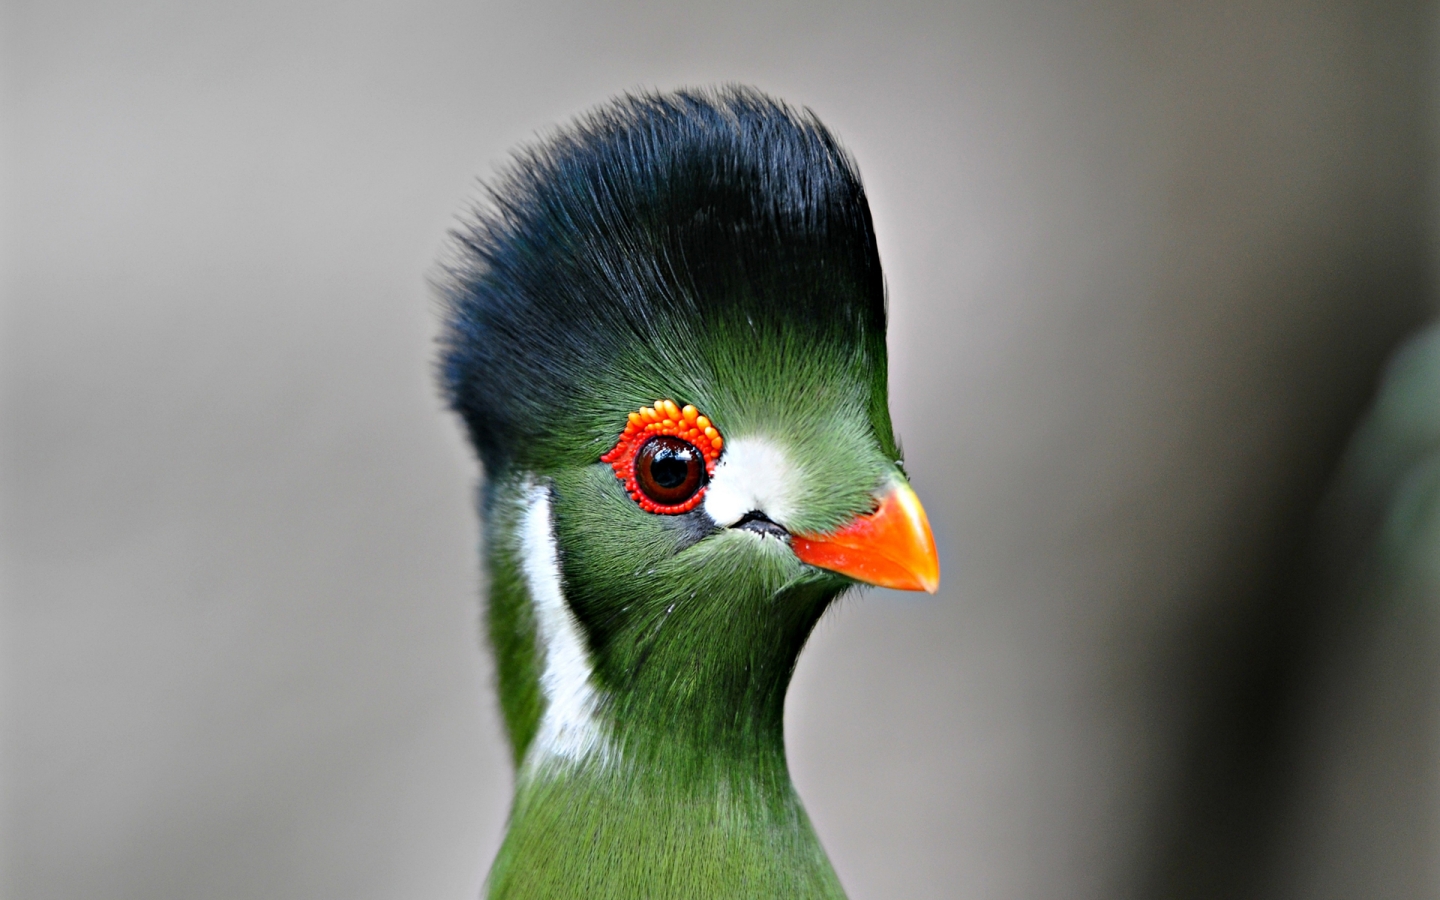 Green Bird Close Up for 1440 x 900 widescreen resolution